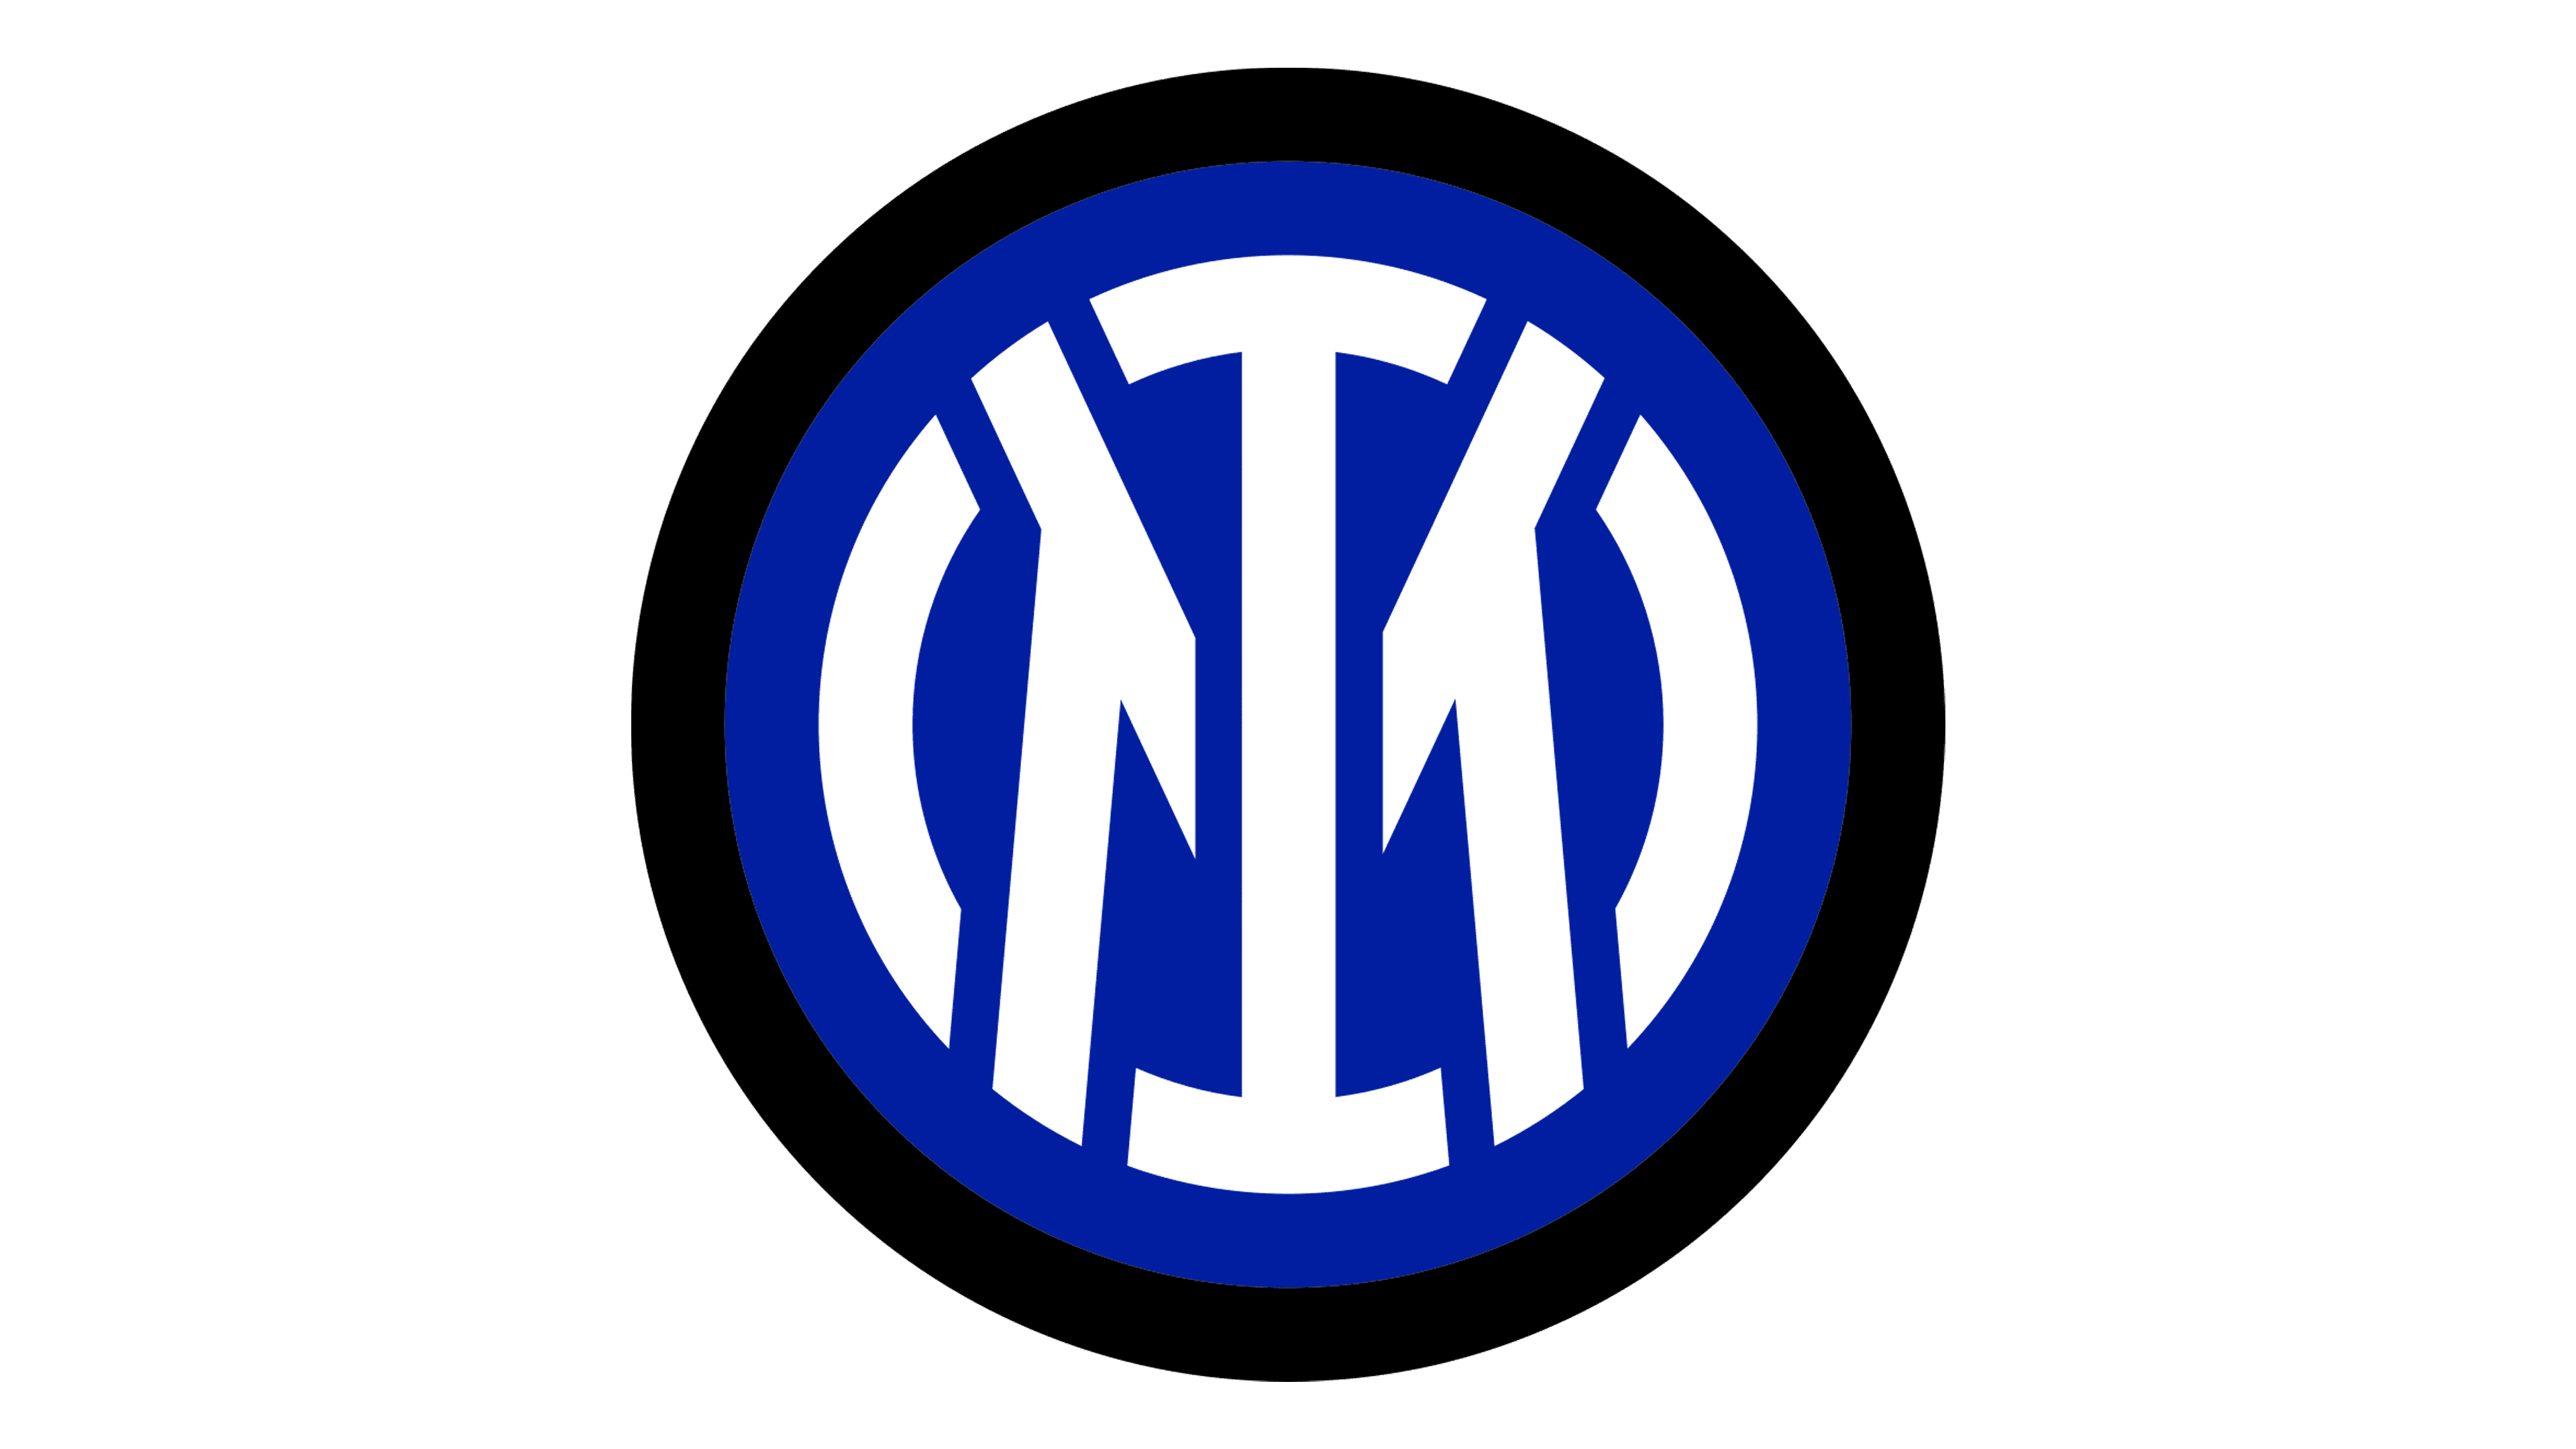 Inter Milan Transparent Logo PNG